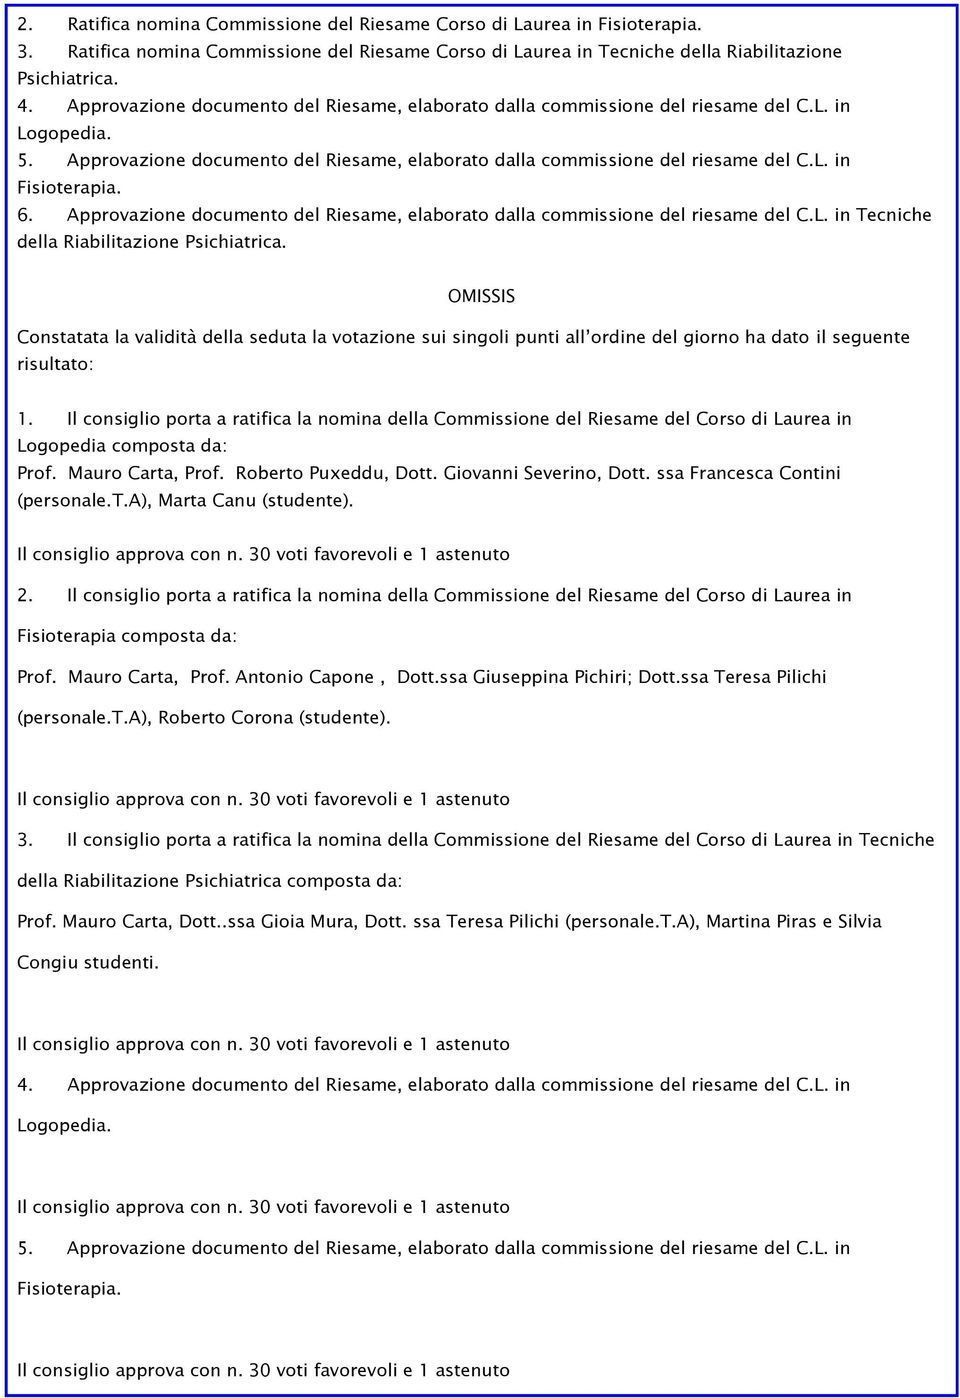 6. Approvazione documento del Riesame, elaborato dalla commissione del riesame del C.L. in Tecniche della Riabilitazione Psichiatrica.